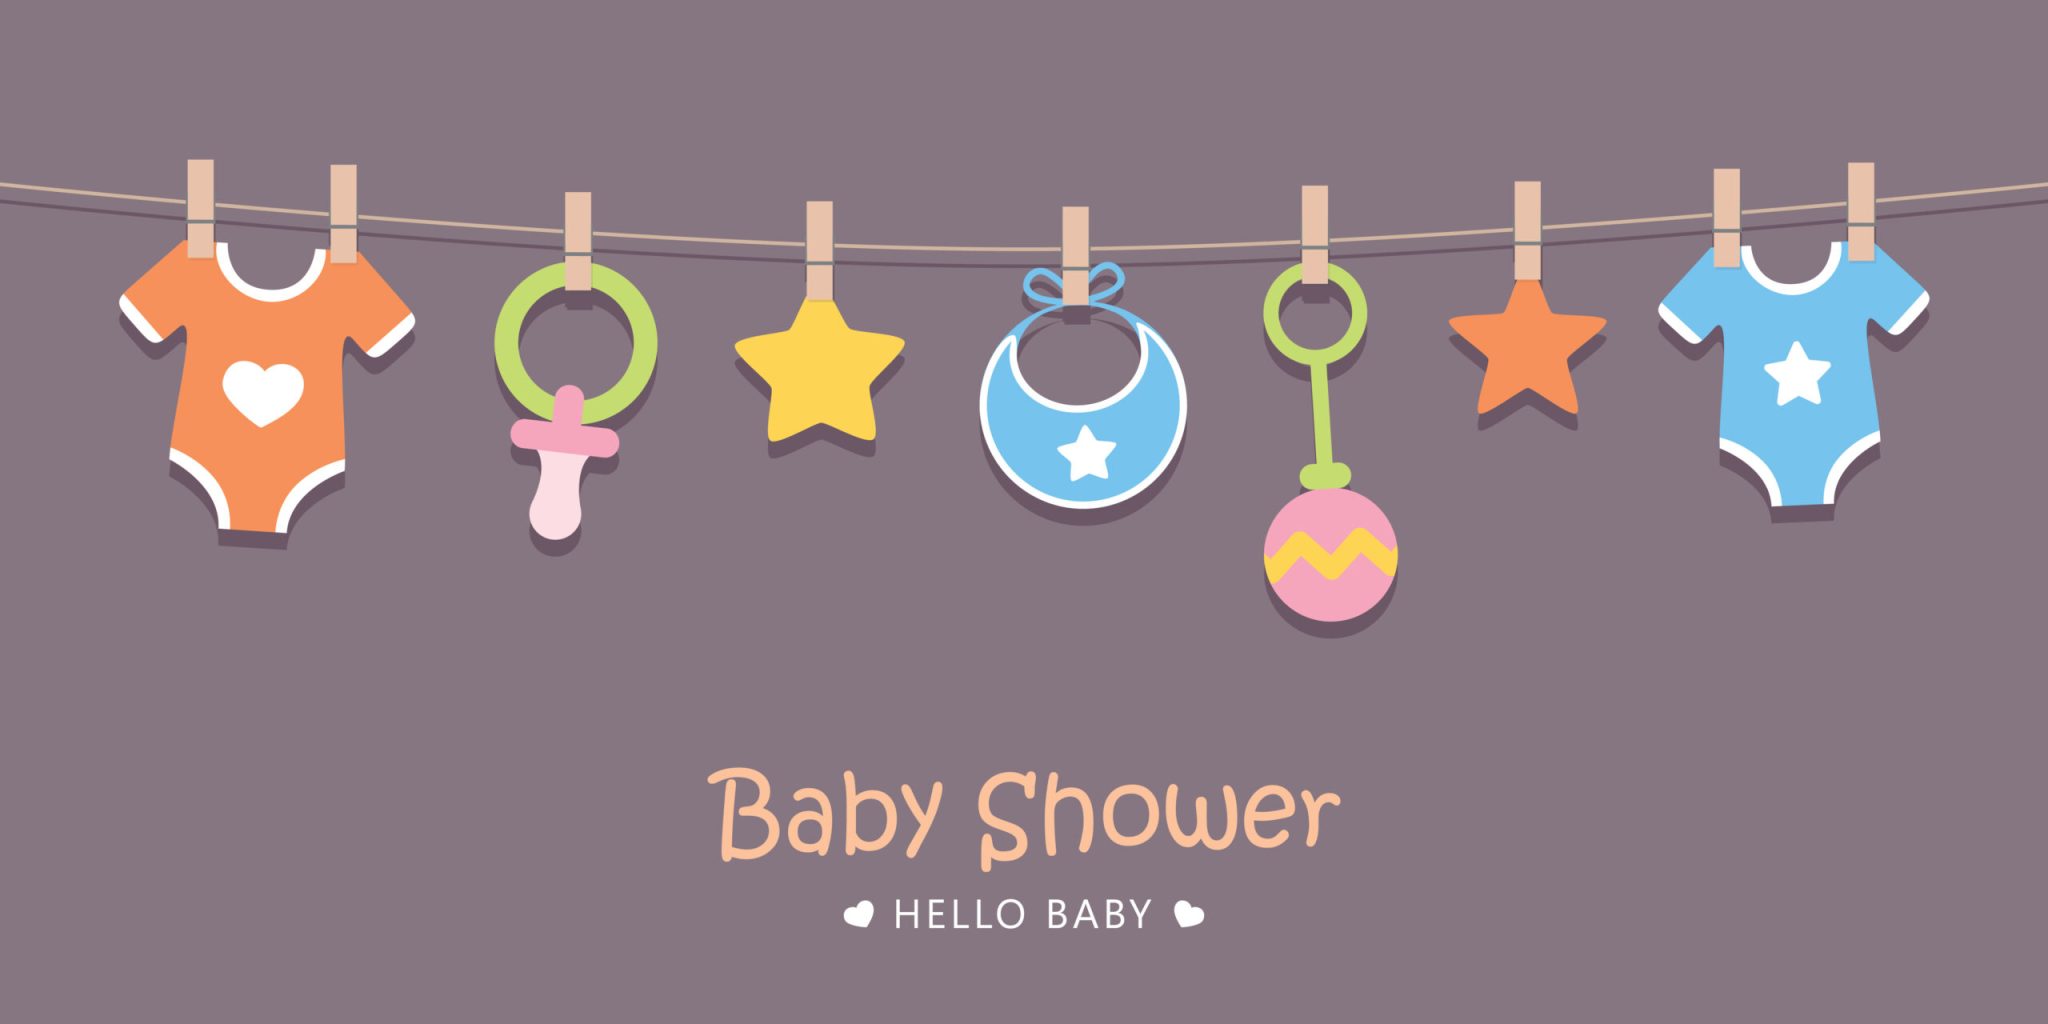 babyshower guide